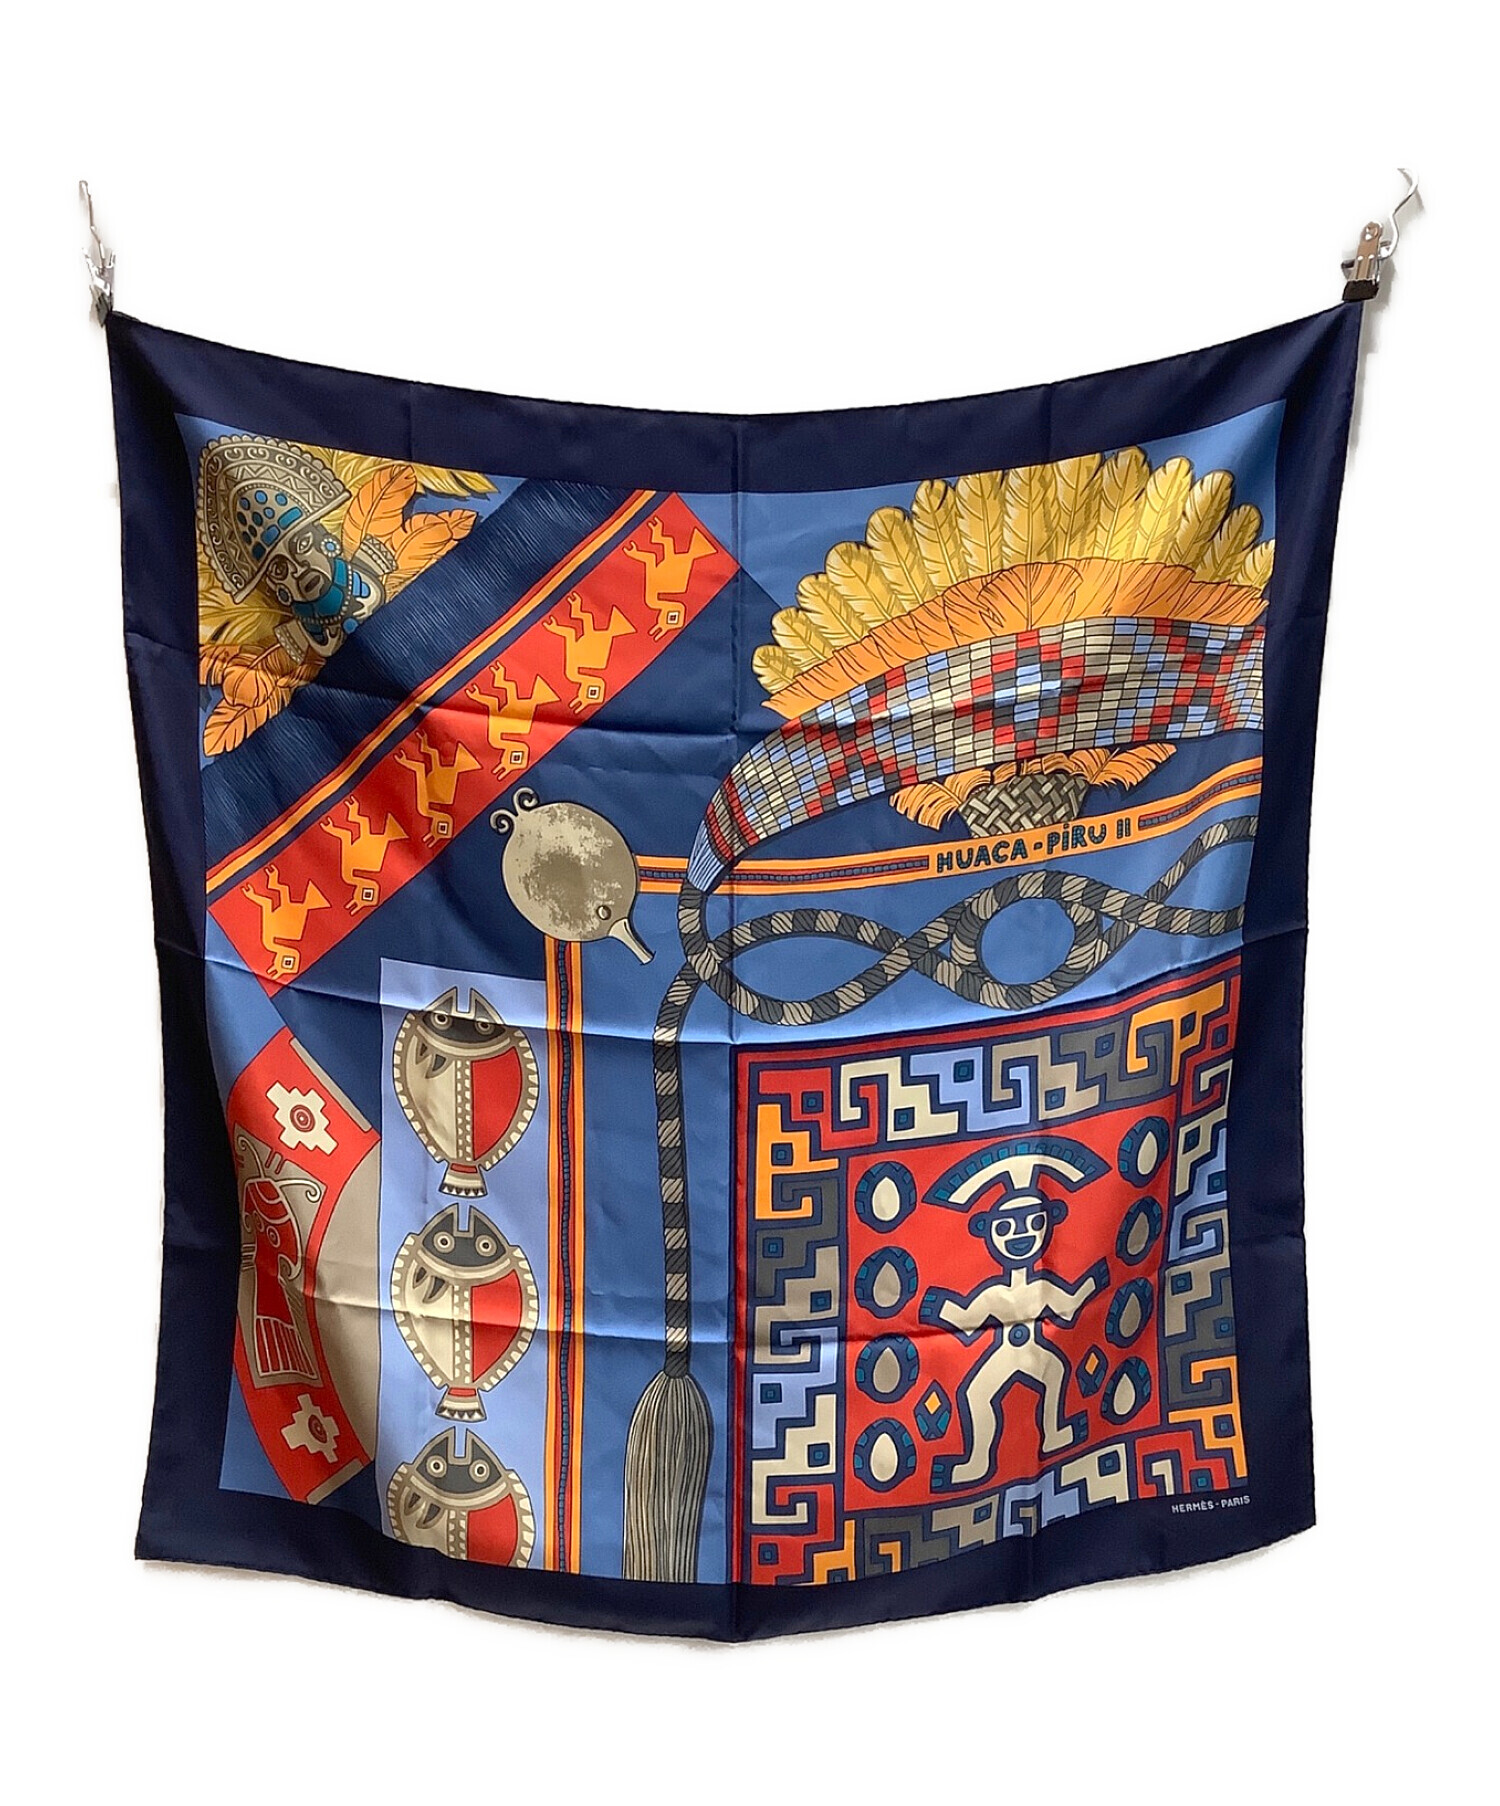 HERMES (エルメス) カレ90 HUACA PIRU Ⅱ 神聖なるペルー スカーフ ネイビー